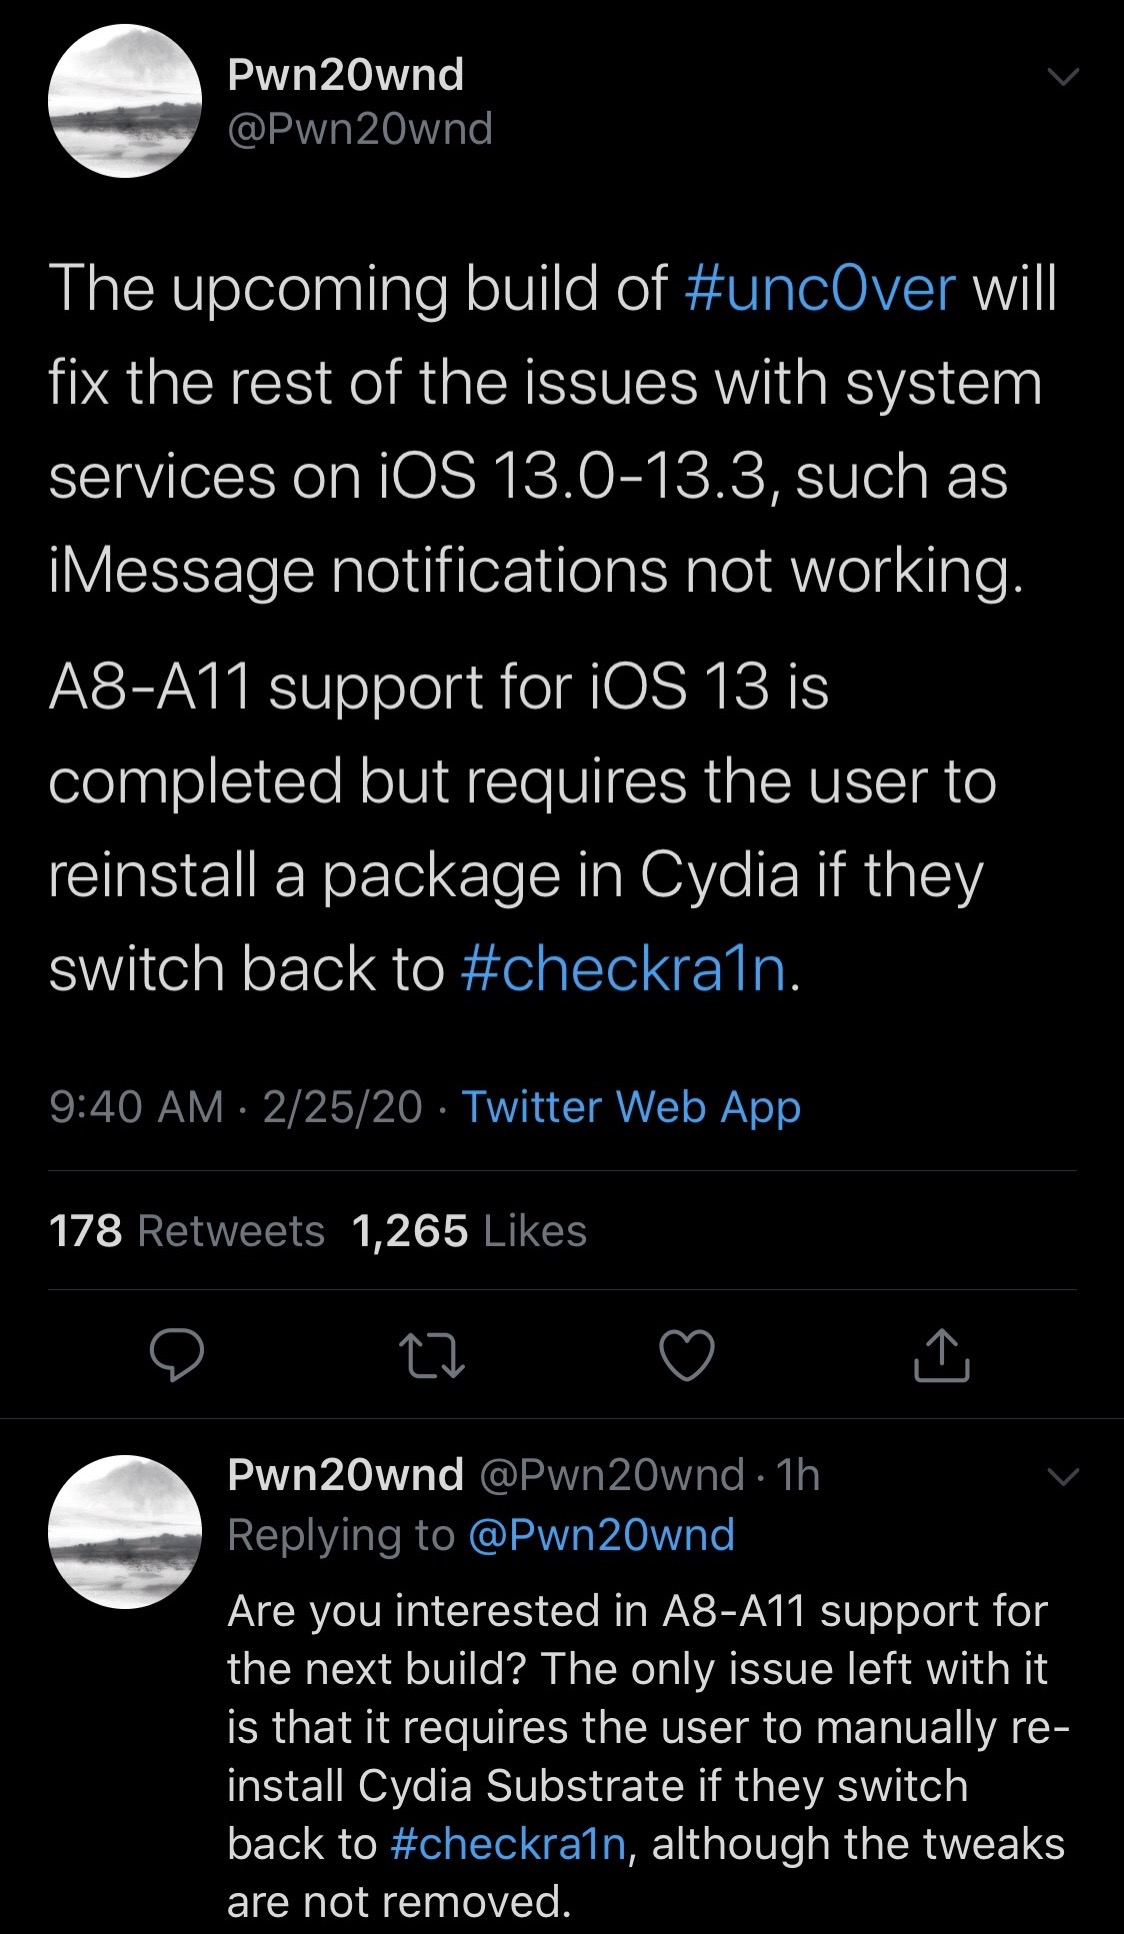 Pembaruan berikutnya ditemukan untuk mendukung iOS 13.0-13.3 pada perangkat A8-A11 3.